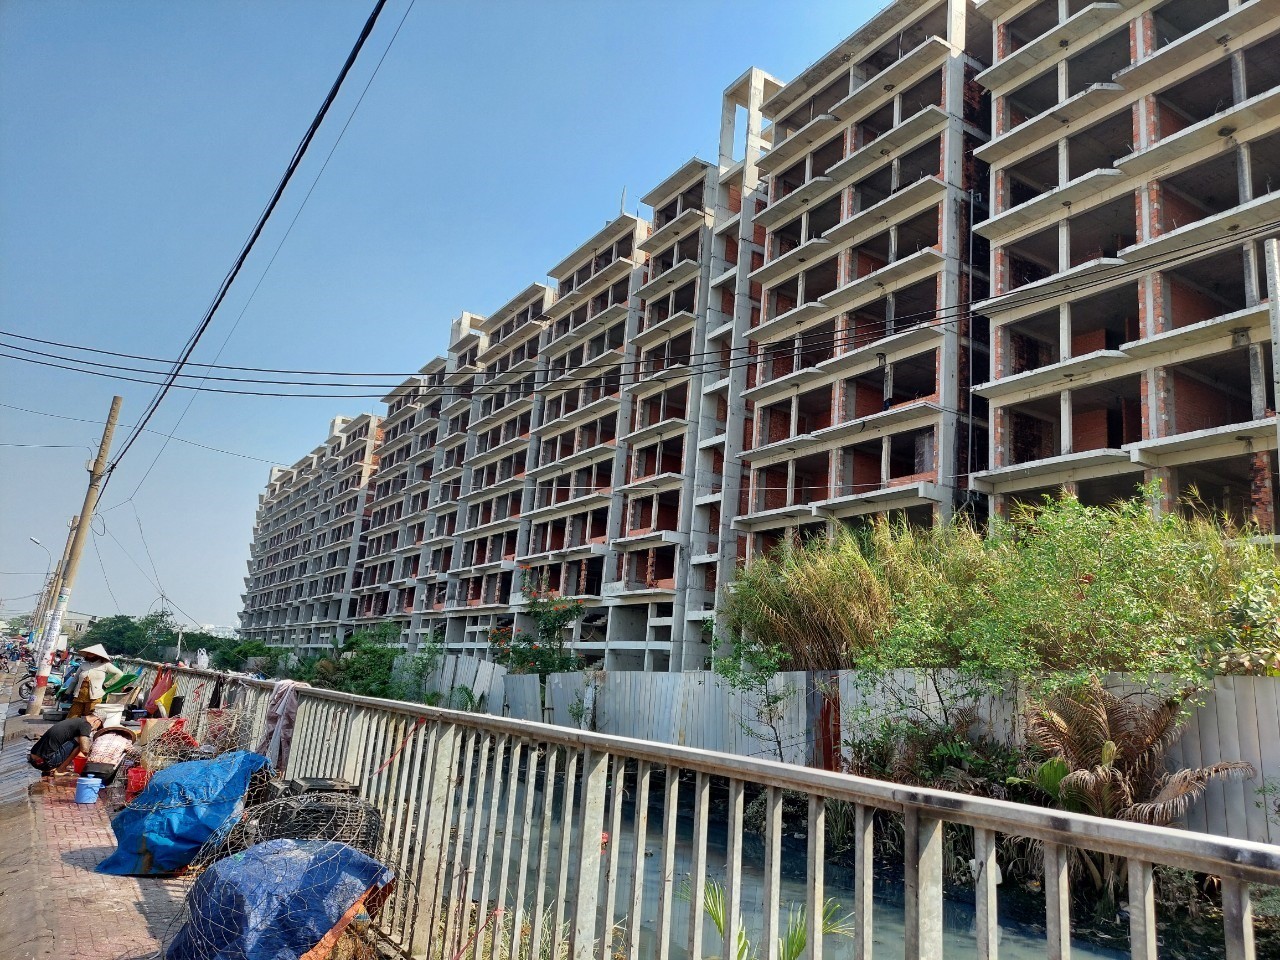 
Nhiều dự án bất động sản tại TP Hồ Chí Minh dừng xây dựng nhiều năm do vướng mắc thủ tục.
